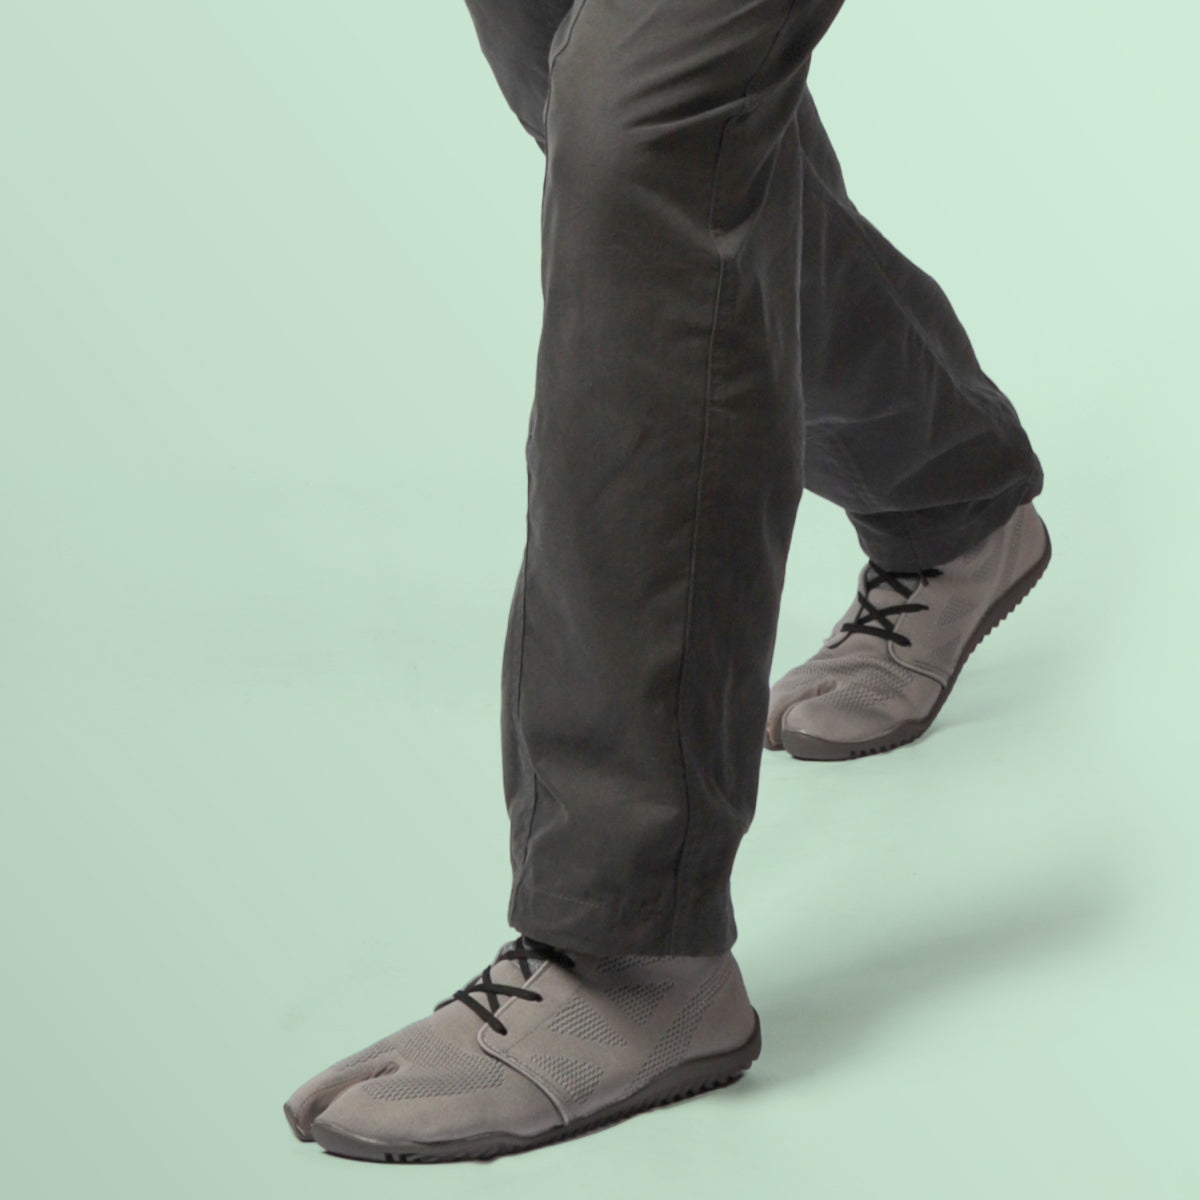 進化する地下足袋「スポーツジョグ2」 – MARUGO Wellness